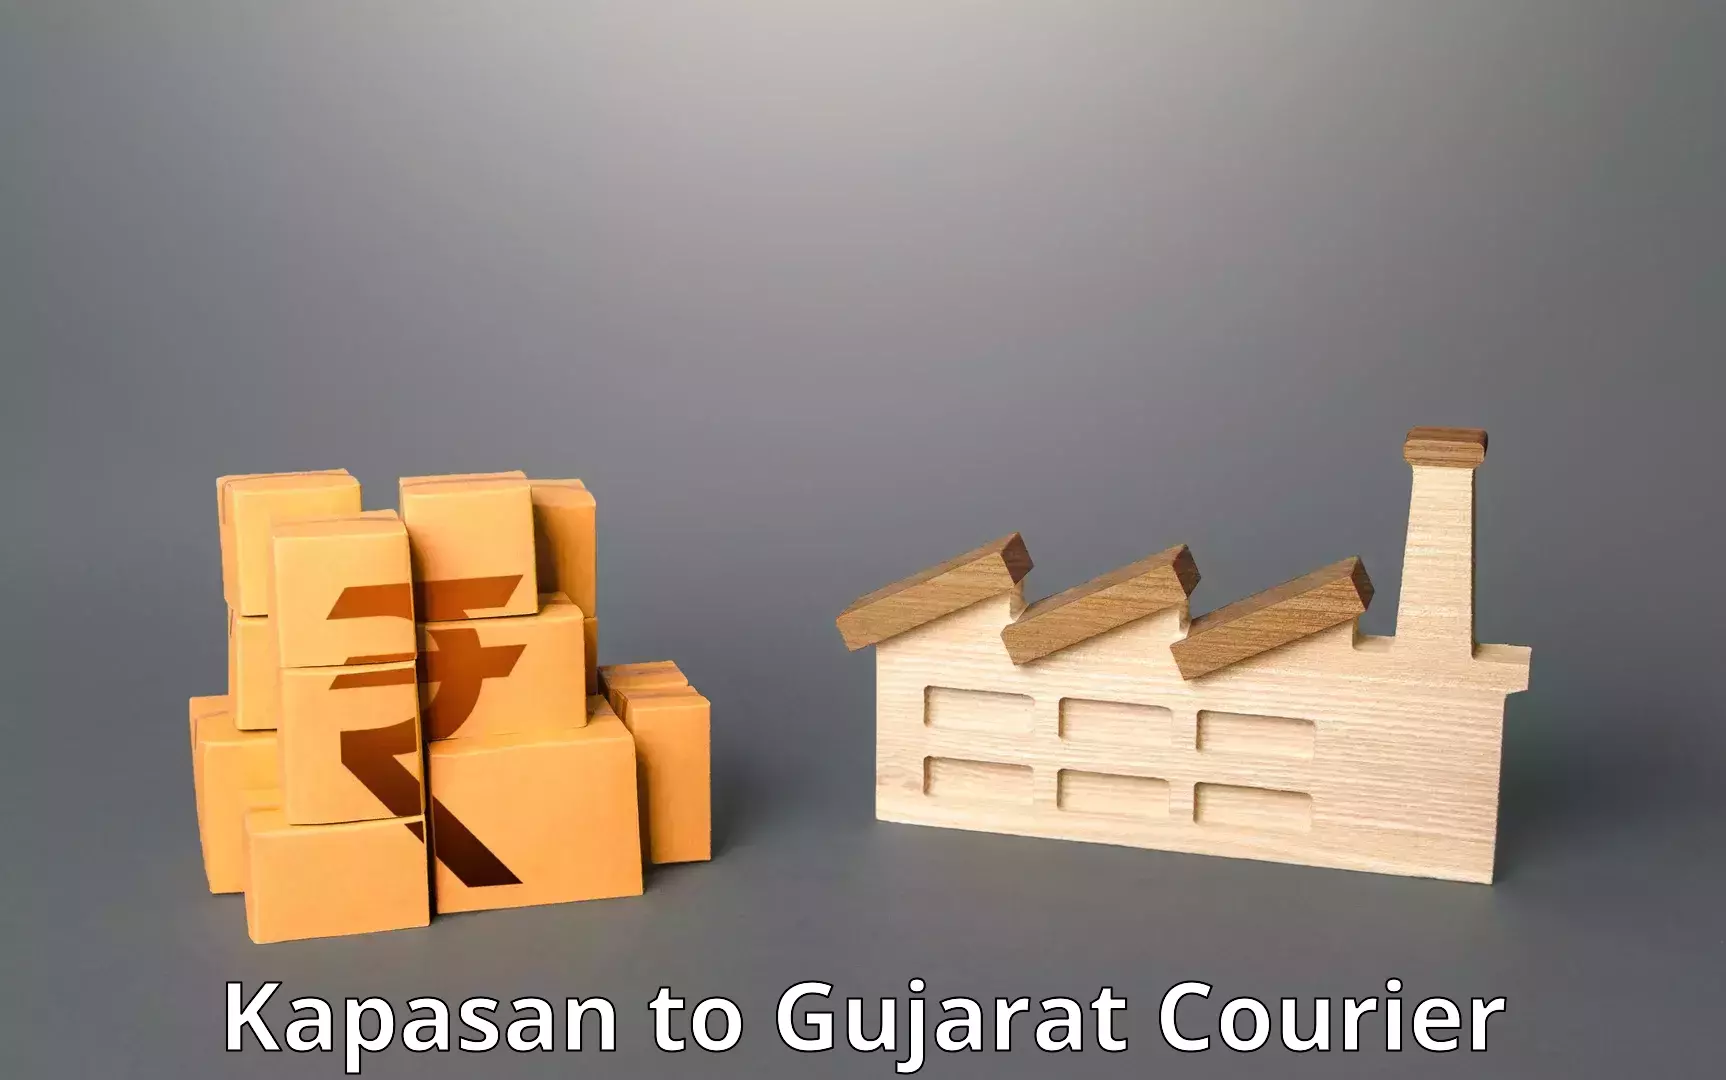 Professional courier handling Kapasan to Gujarat